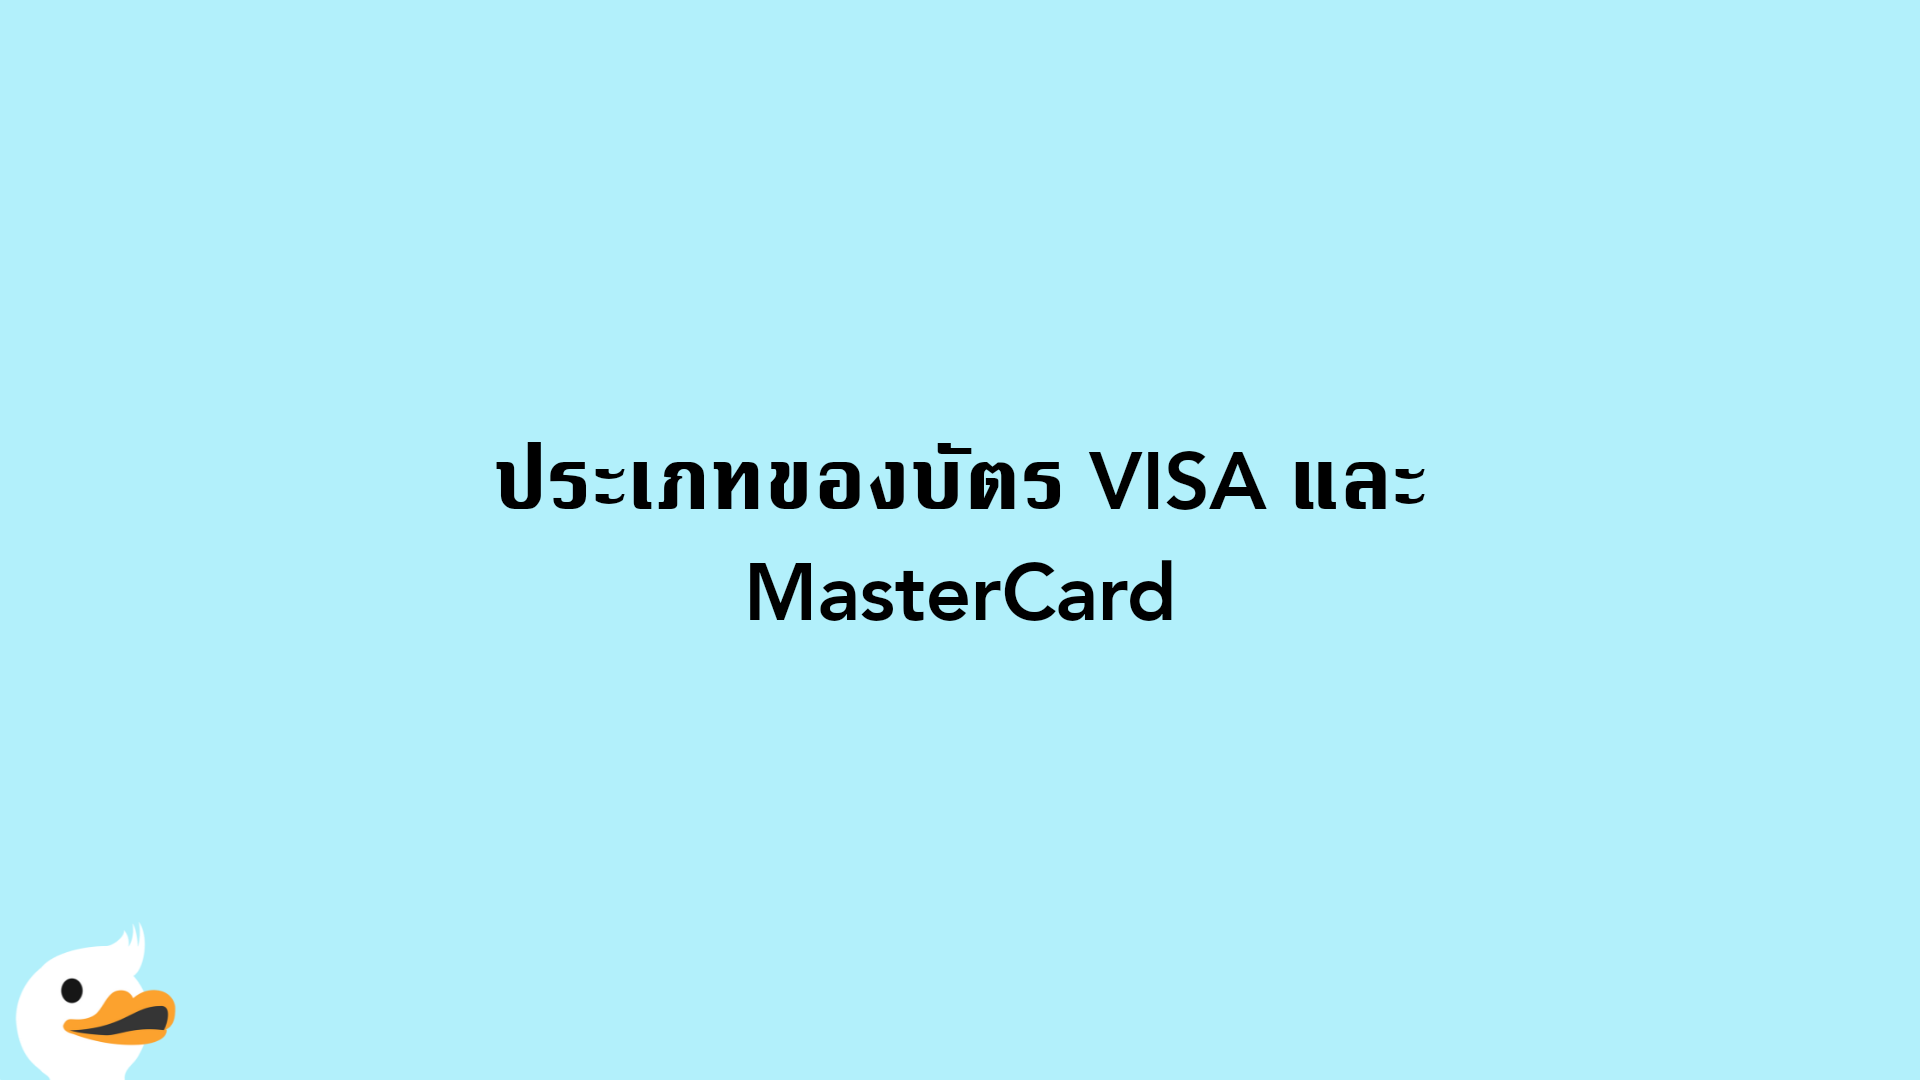 ประเภทของบัตร VISA และ MasterCard